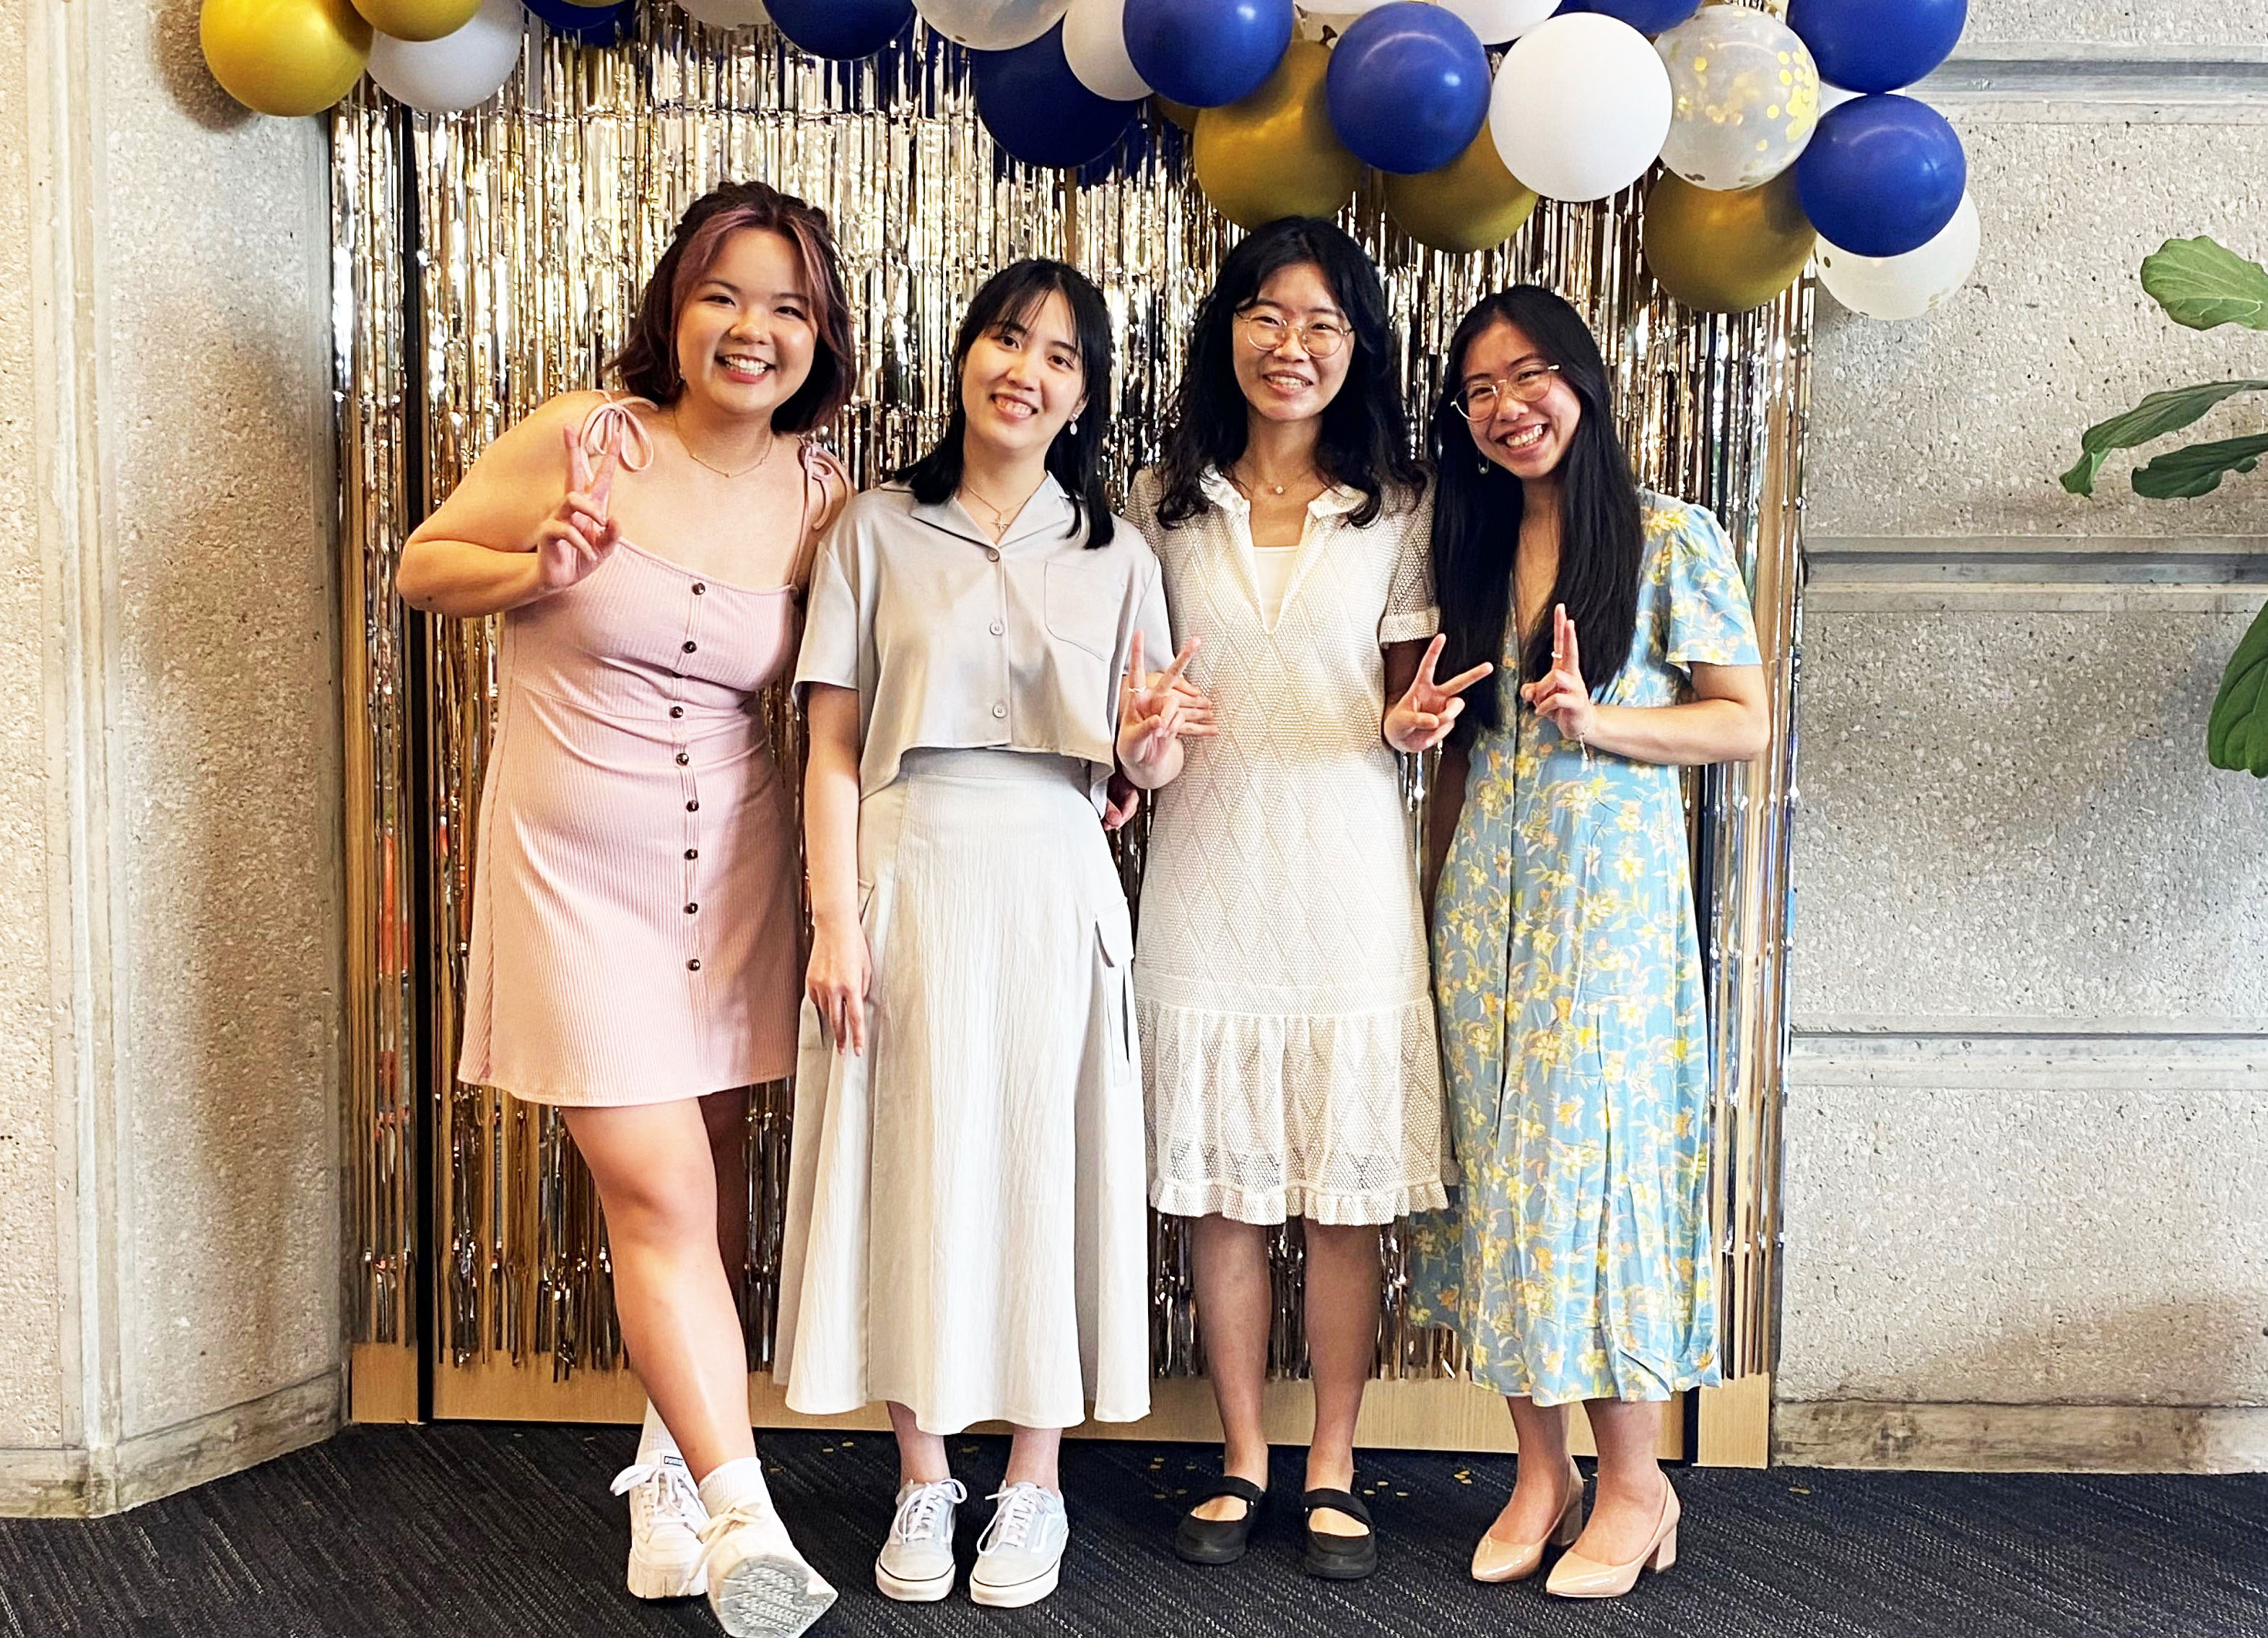 Siyun Pan, Tianyi Zhu, Yuan Zhou and Ashley Wong standing in front of balloons